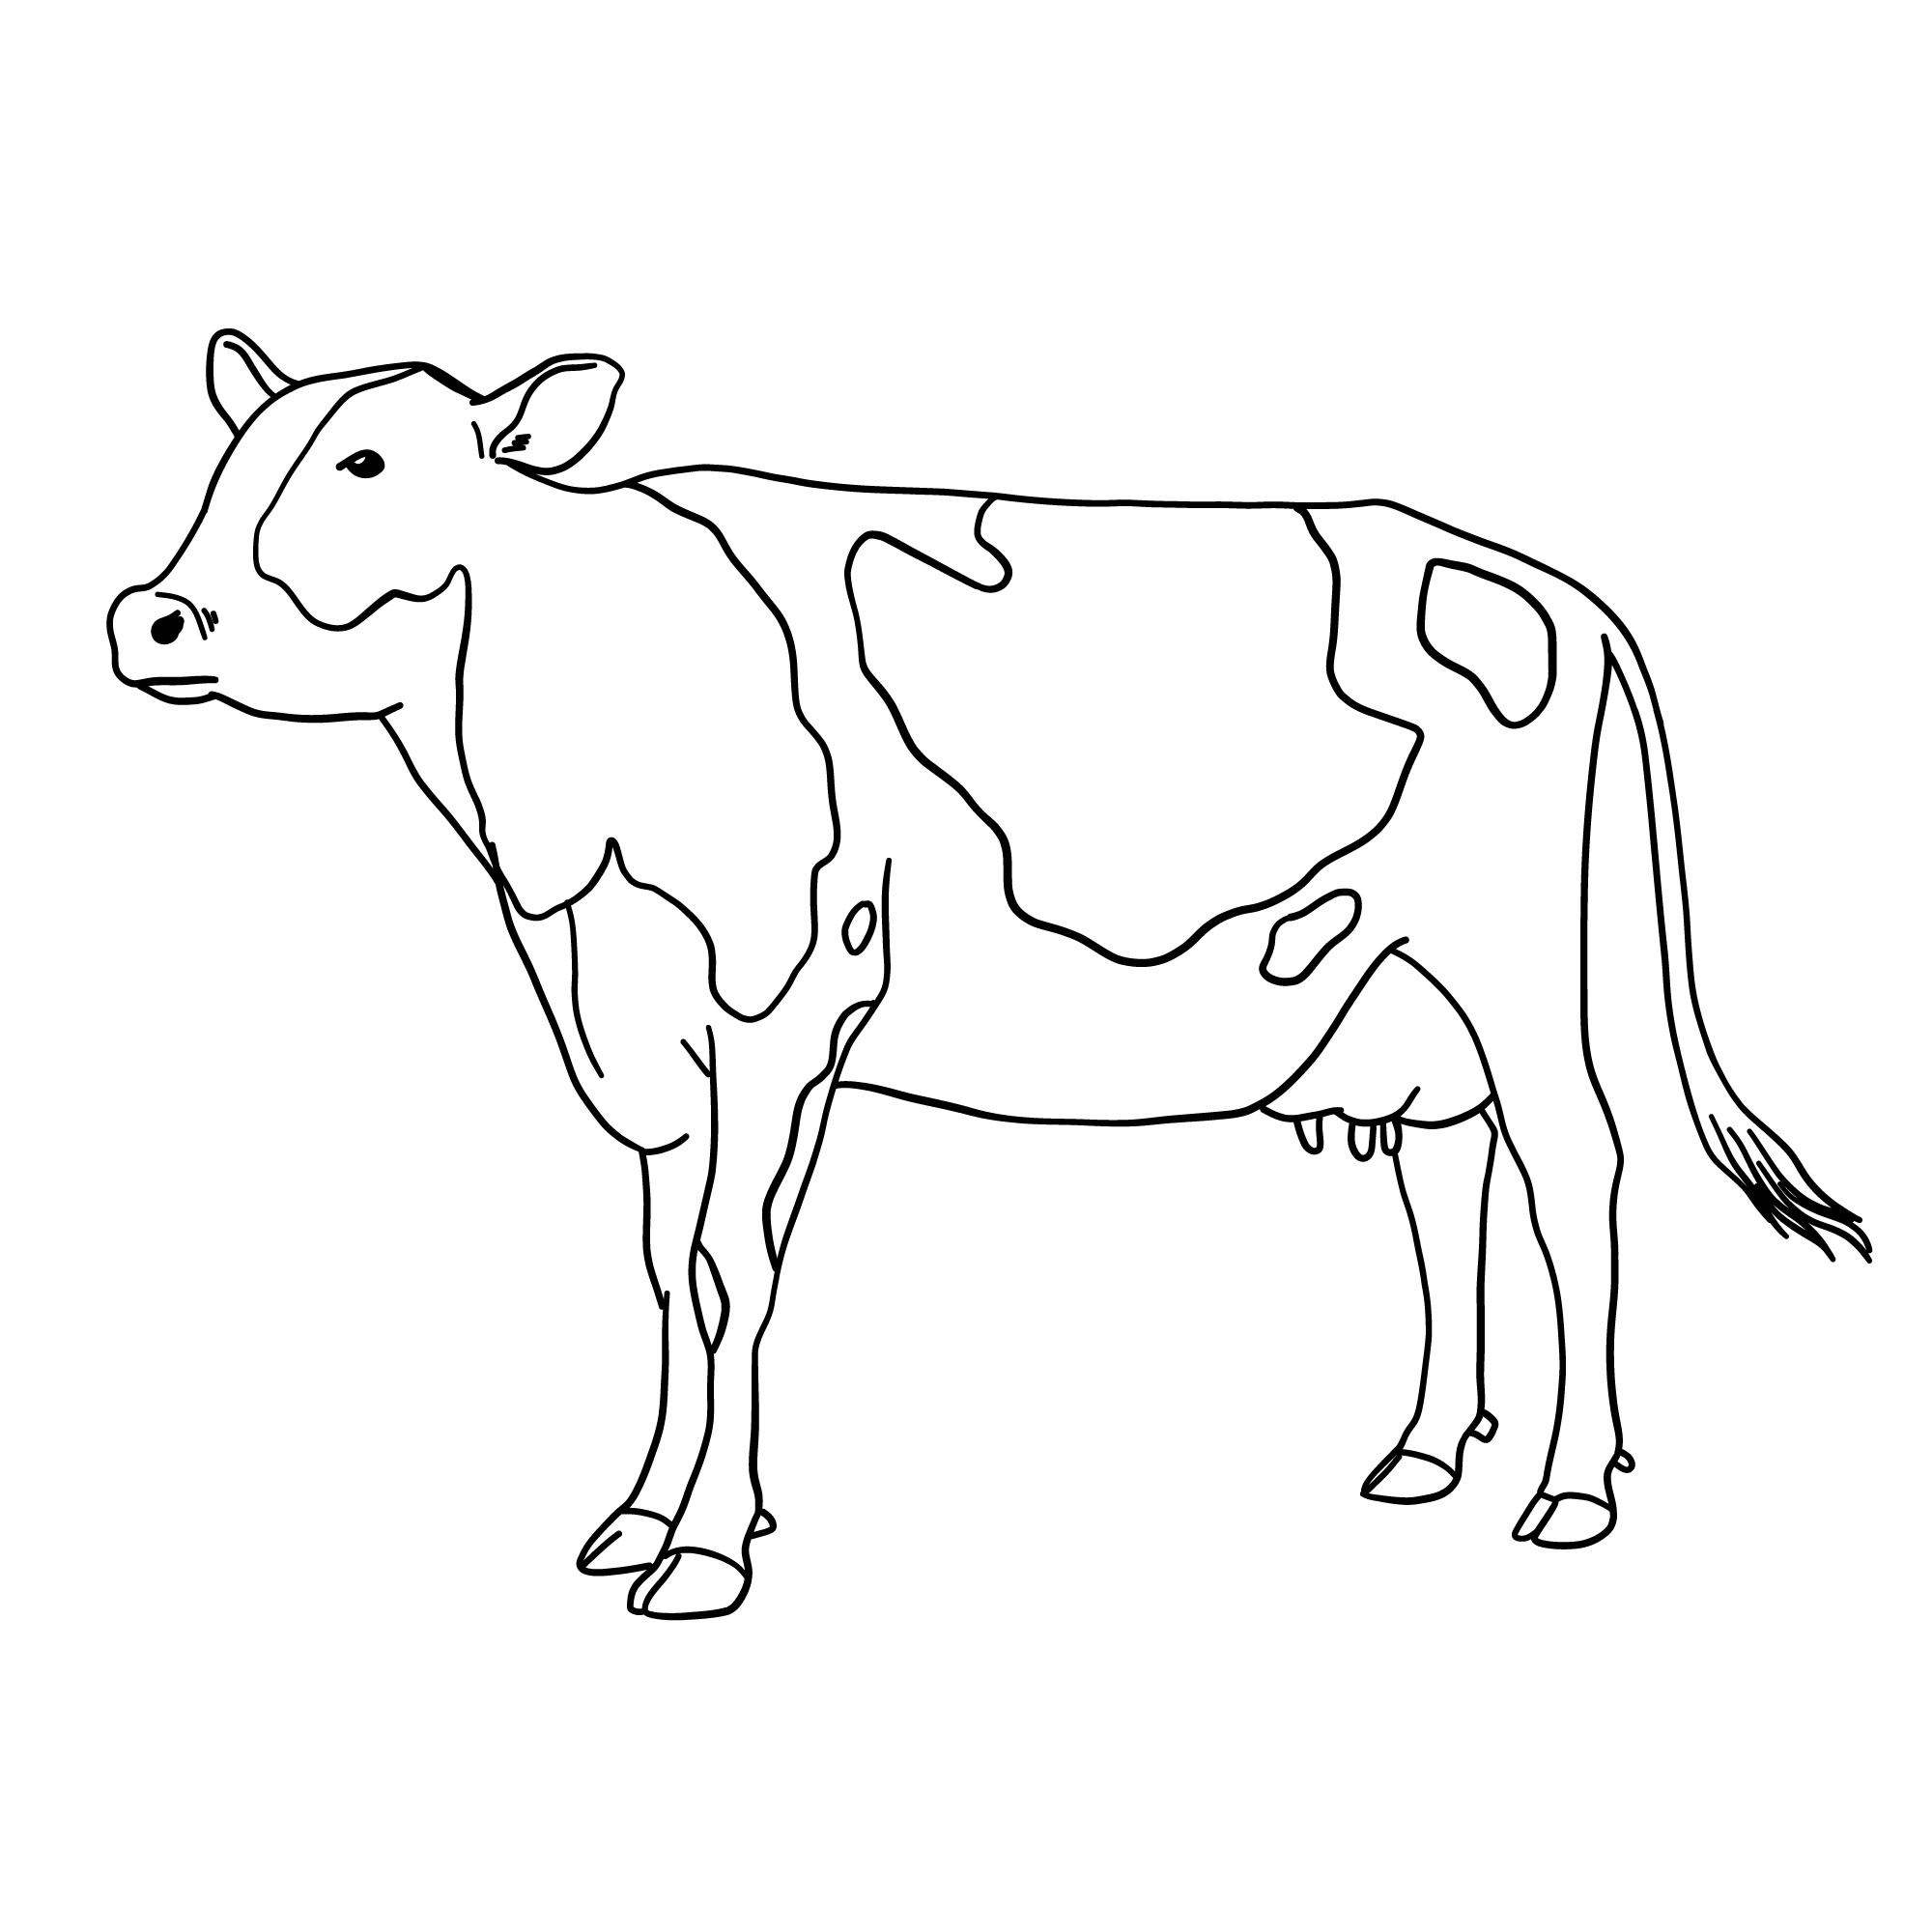 Раскраска для детей: корова Зорька